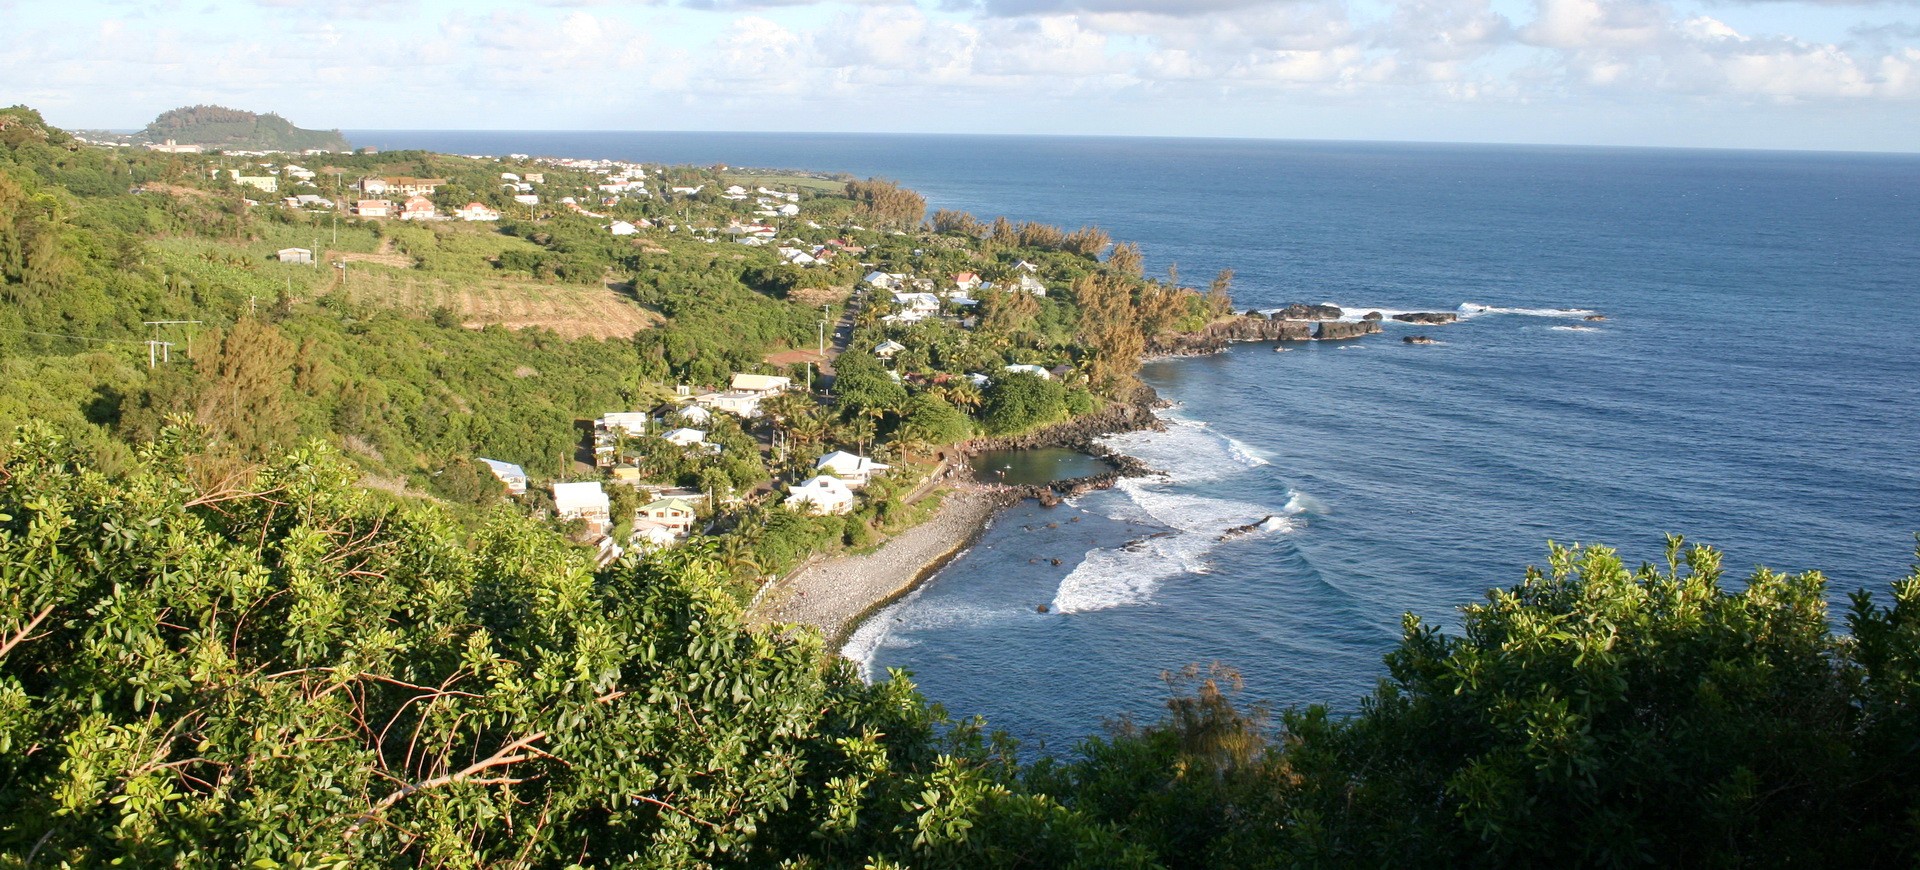 Manapani à I'île de la Réunion